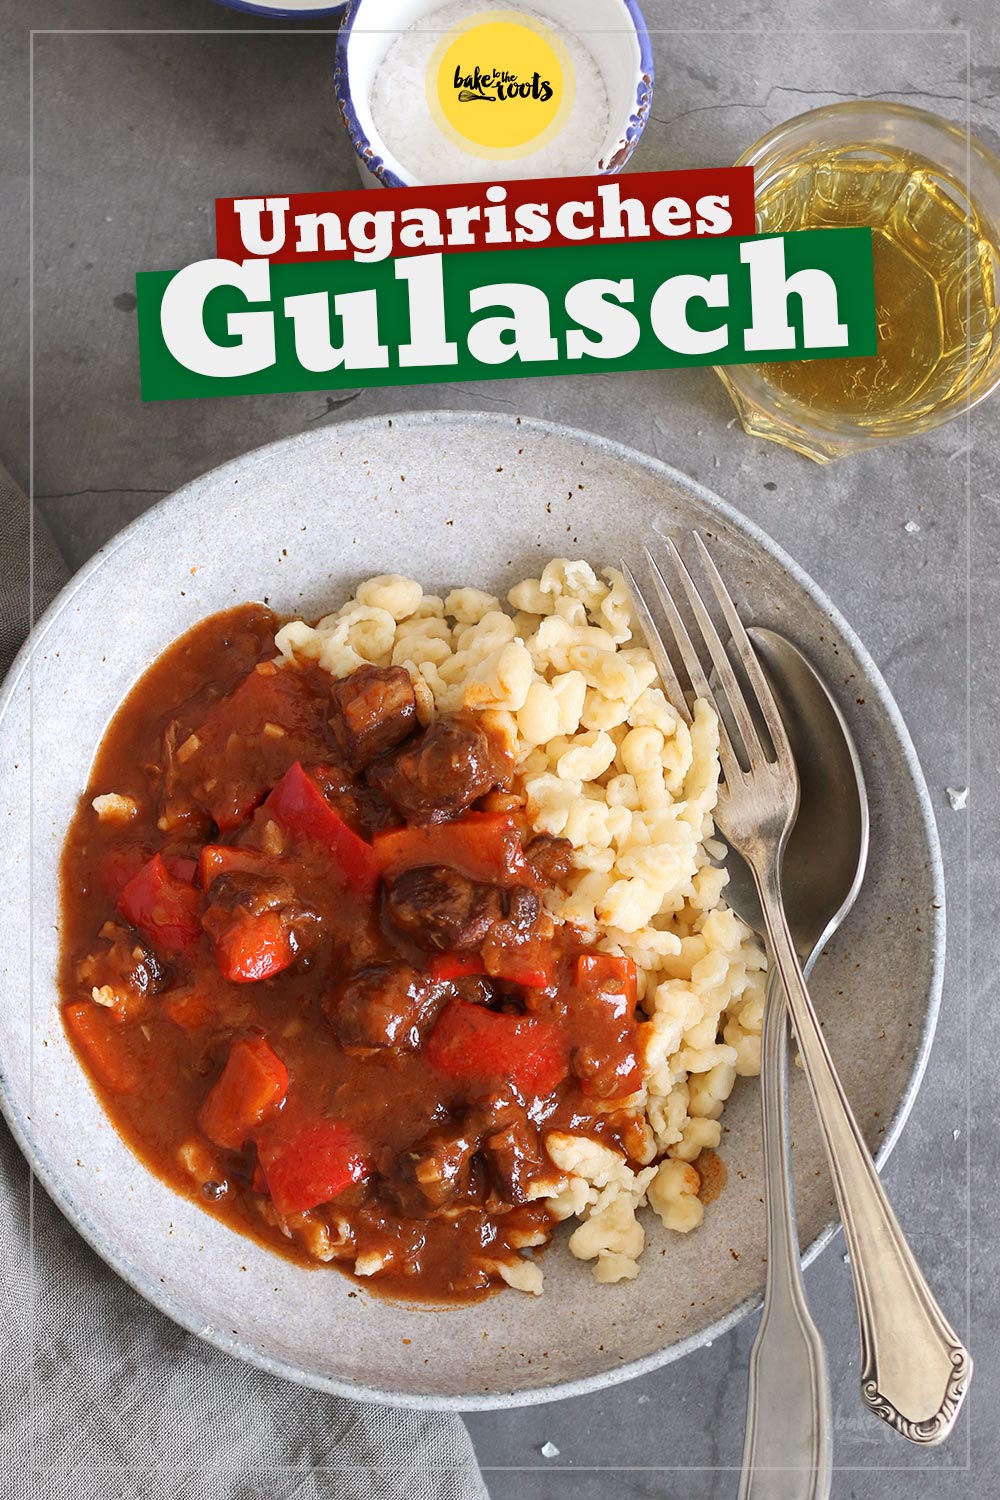 Ungarisches Gulasch | Bake to the roots